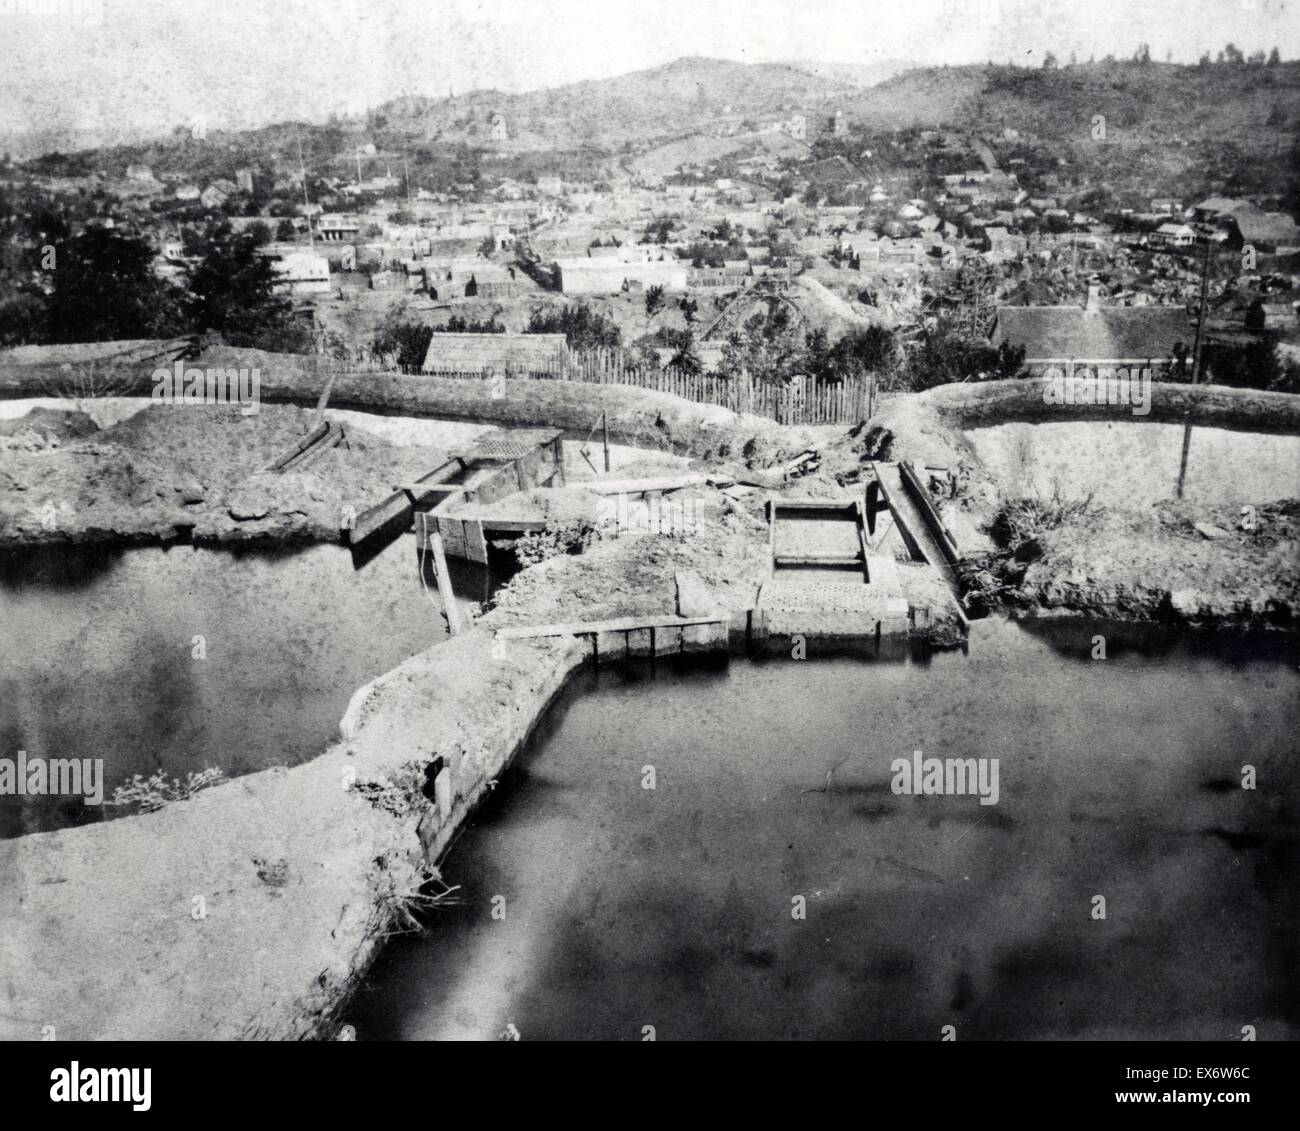 La photographie montre réservoirs utilisés pour l'exploitation minière l'or alluvionnaire à Columbia, Tuolumne County, en Californie. Datée 1866 Banque D'Images